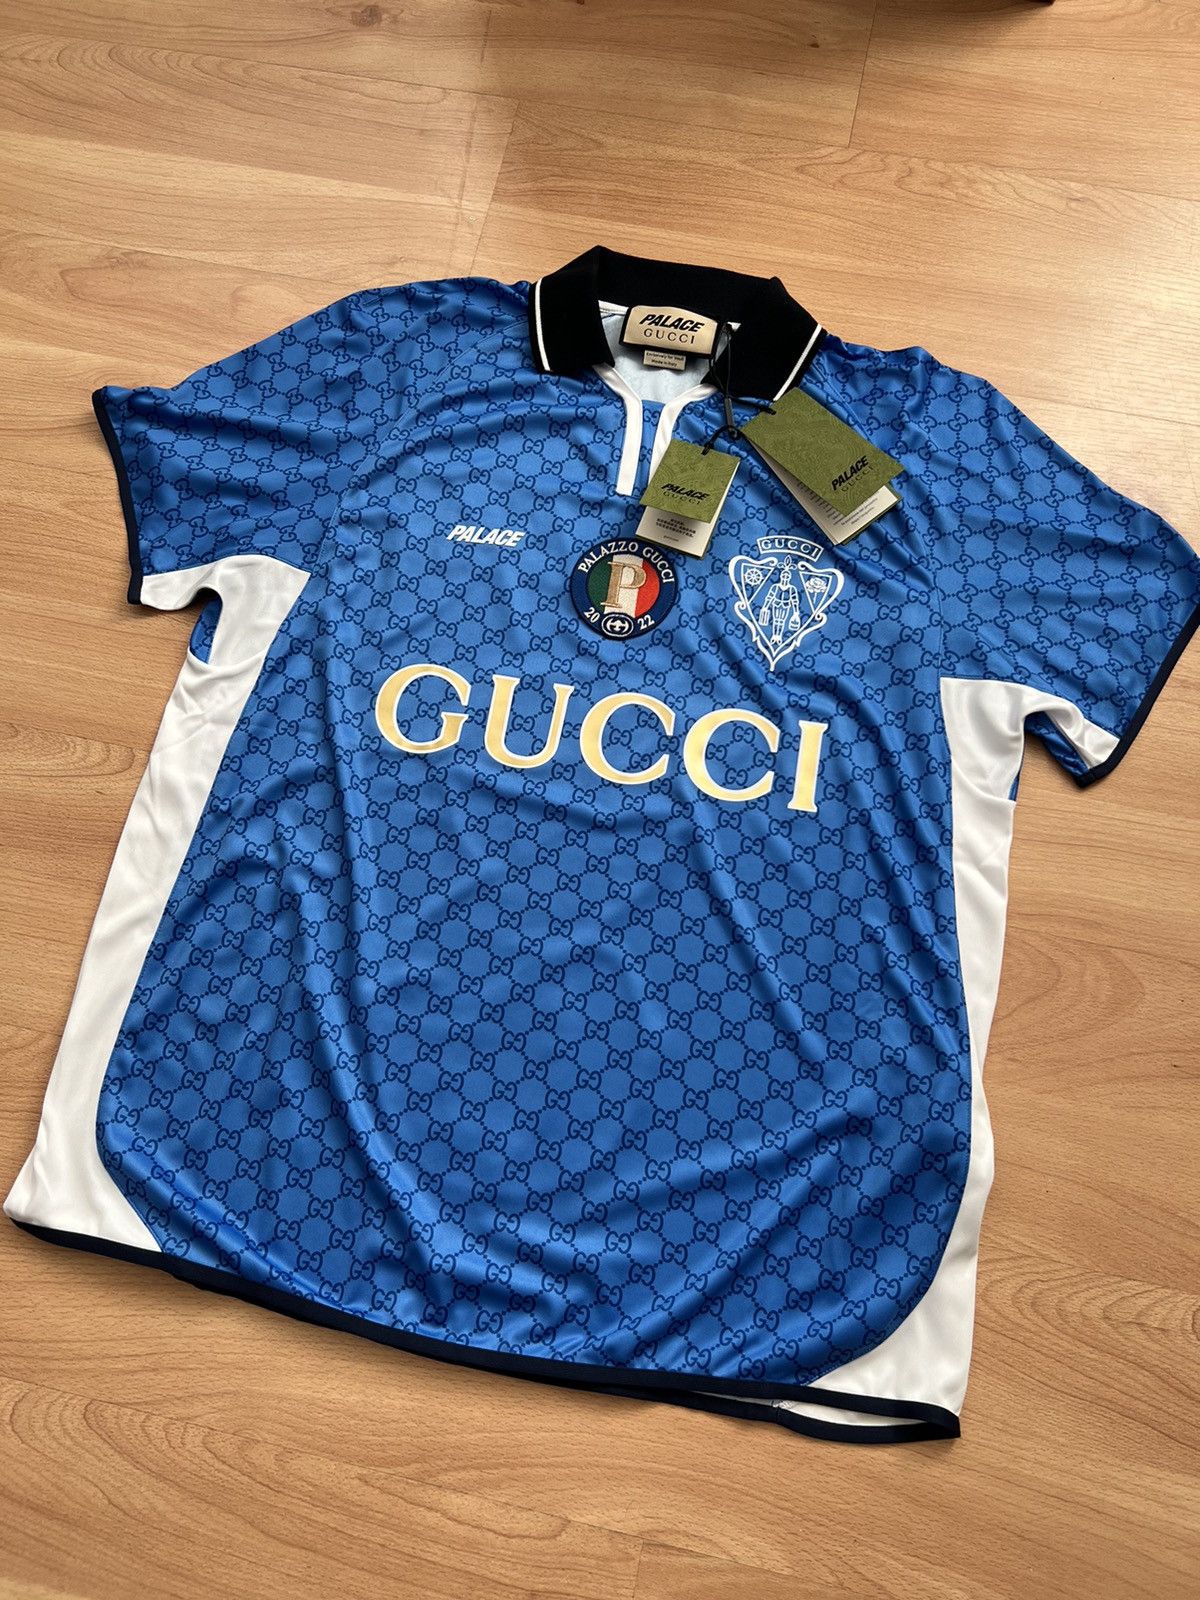 Palace x Gucci Printed Football Technical Jersey T-Shirt . .  #palaceskateboards #palacegucci #guccipalace #guccixpalace #palacexgucci